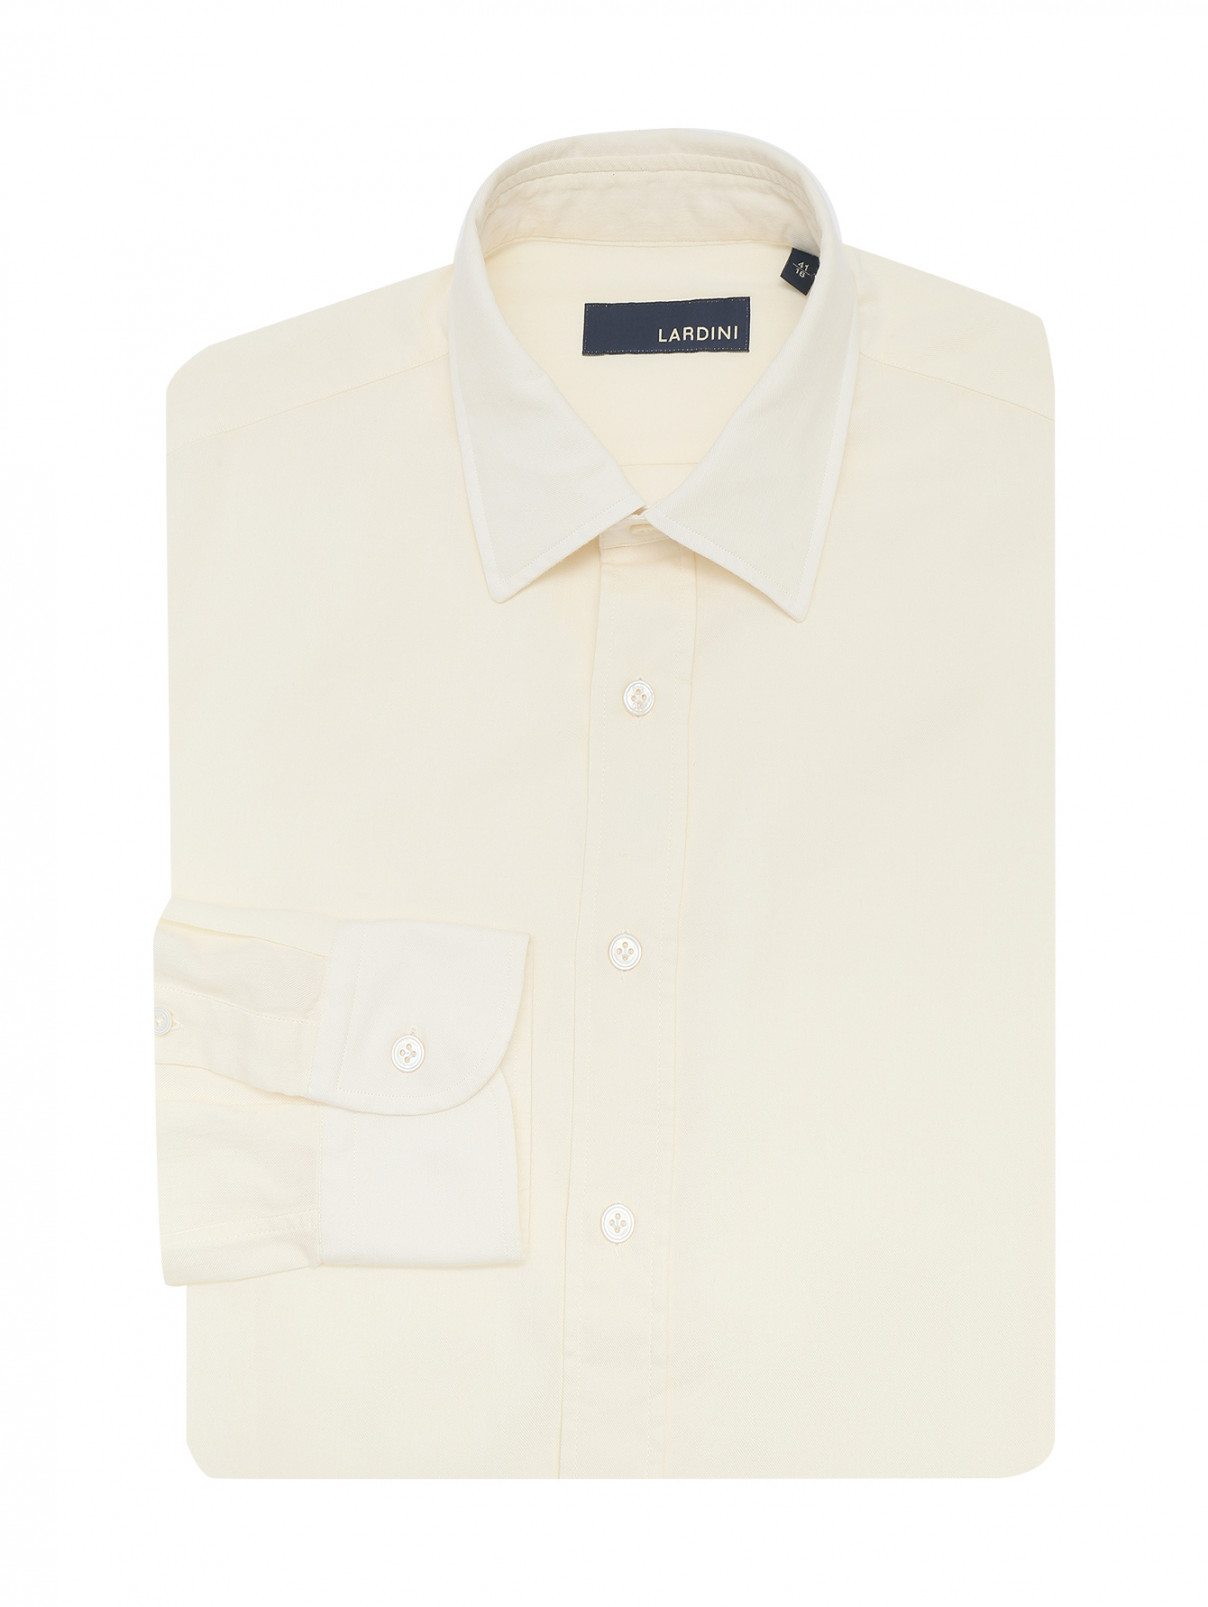 Однотонная рубашка из хлопка и шерсти LARDINI  –  Общий вид  – Цвет:  Бежевый